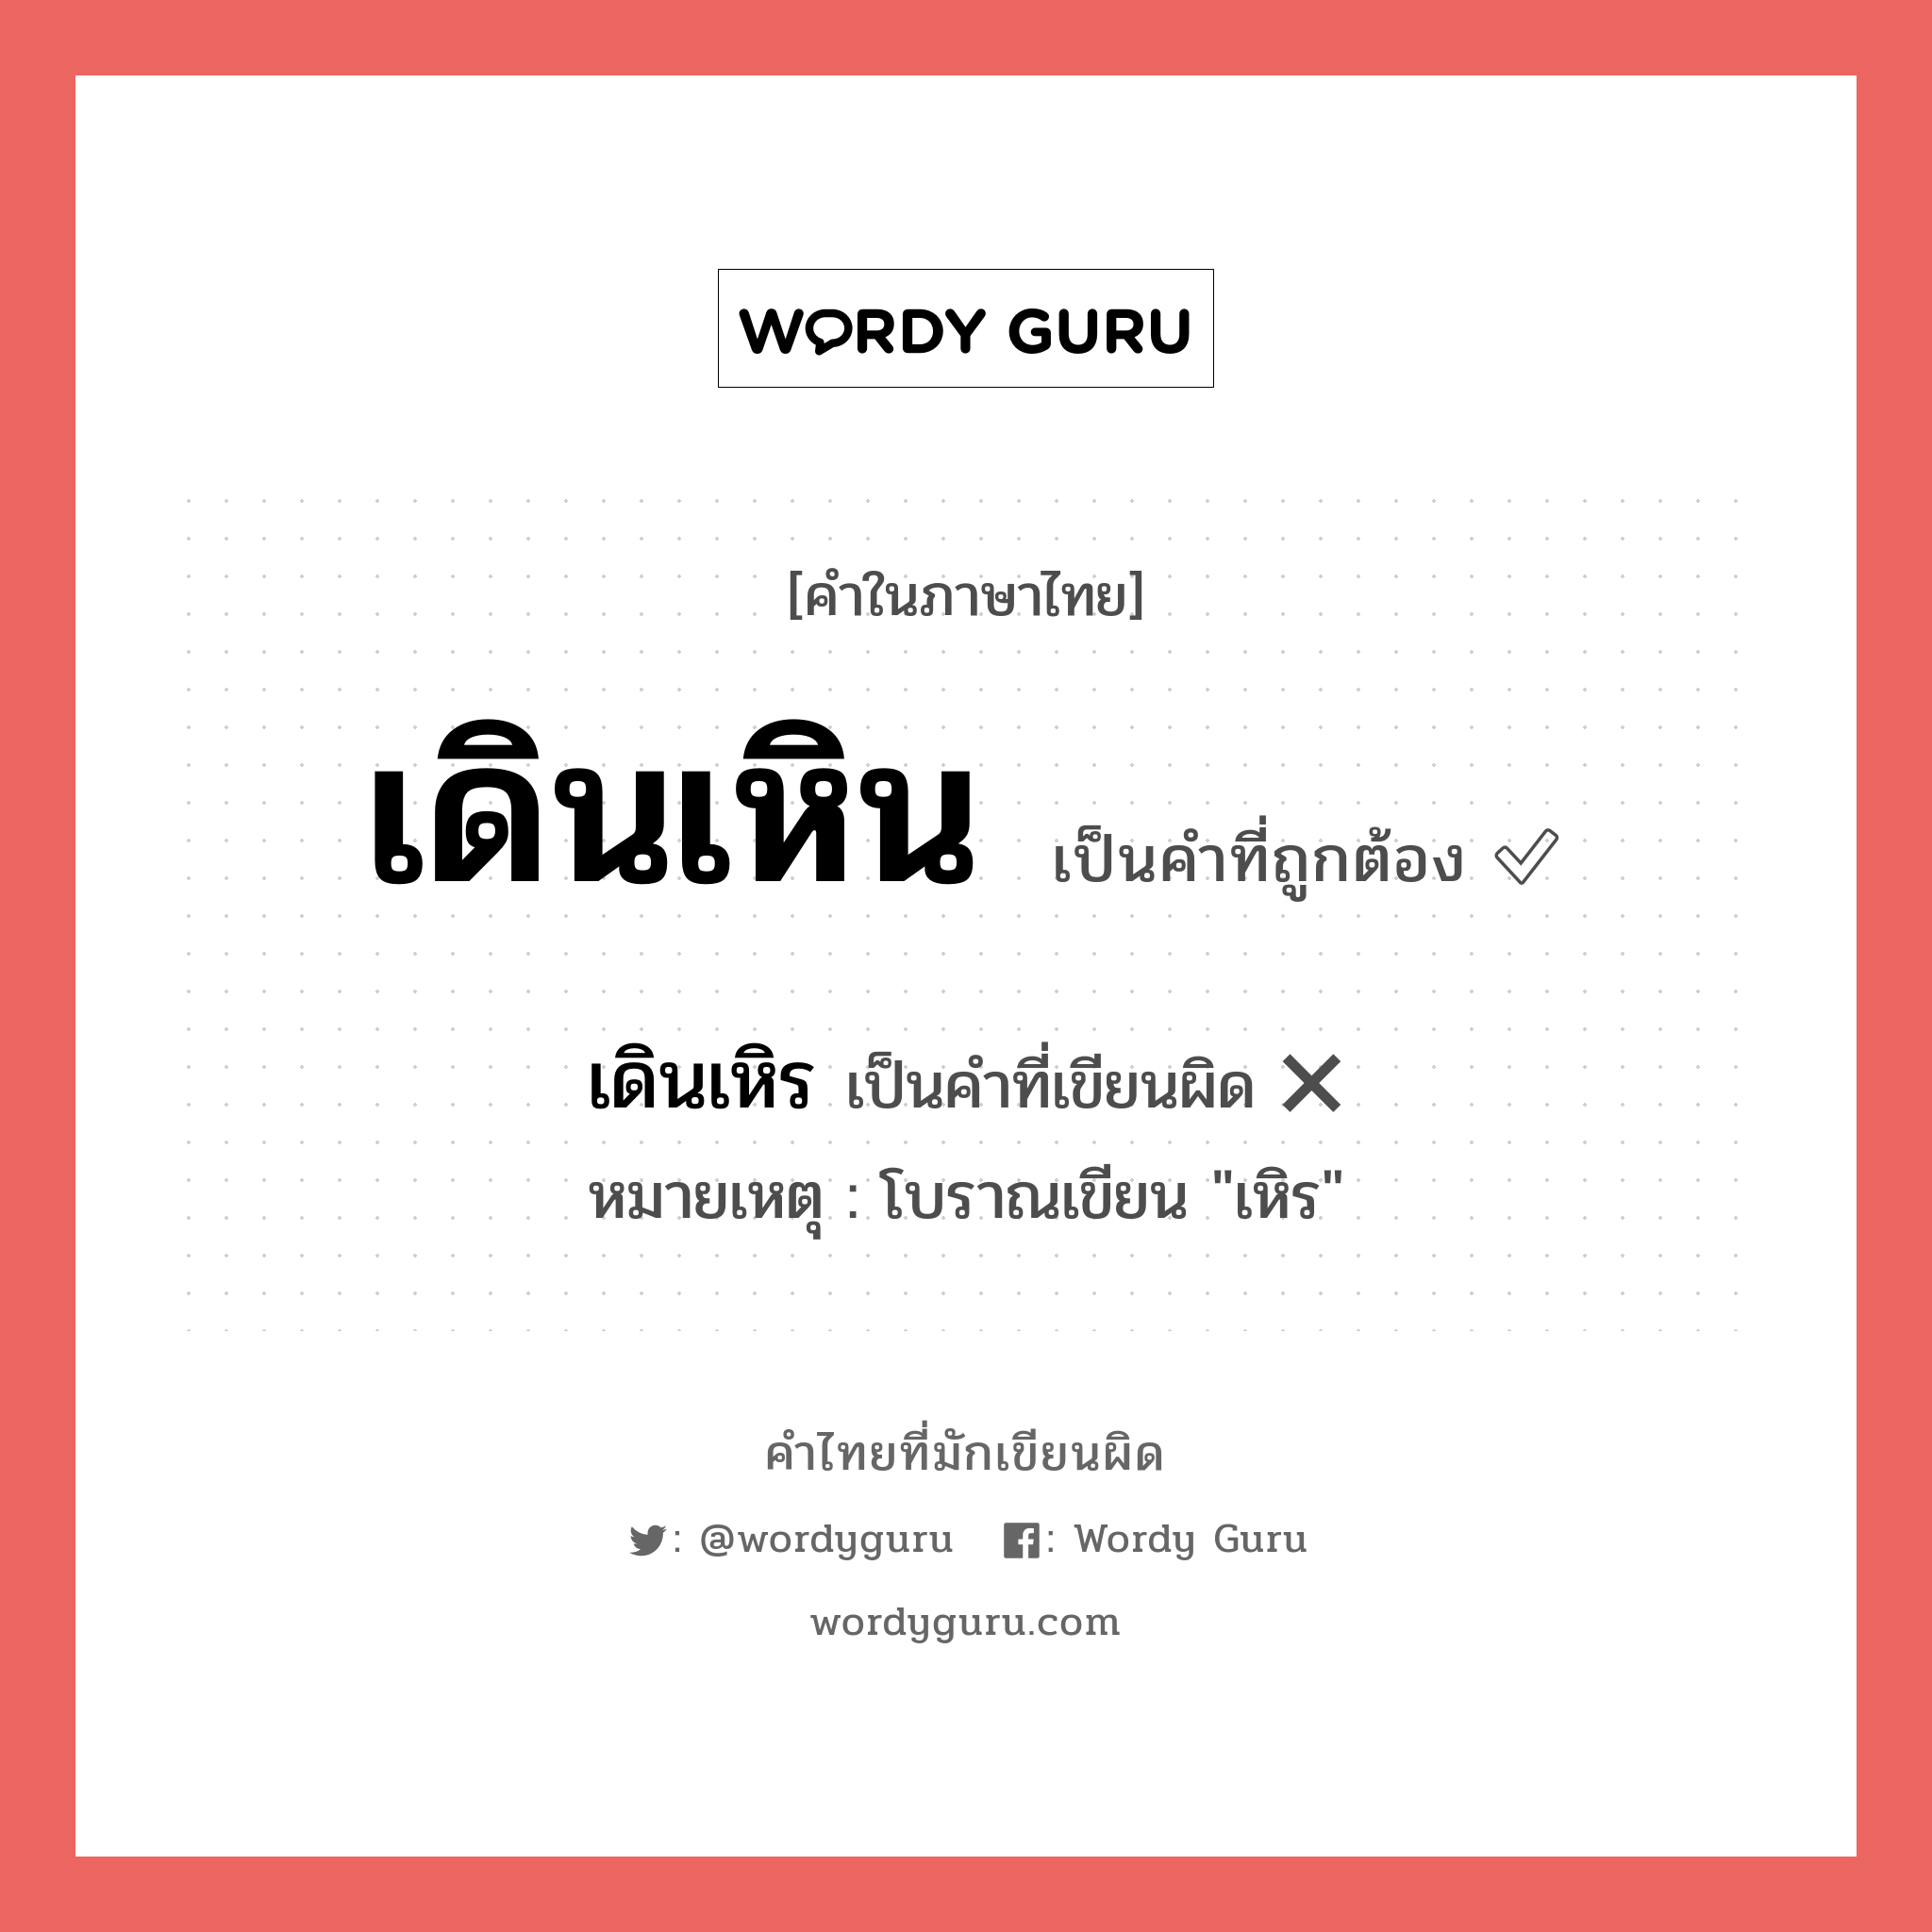 เดินเหิร หรือ เดินเหิน คำไหนเขียนถูก?, คำในภาษาไทยที่มักเขียนผิด เดินเหิร คำที่ผิด ❌ เดินเหิน หมายเหตุ โบราณเขียน "เหิร"